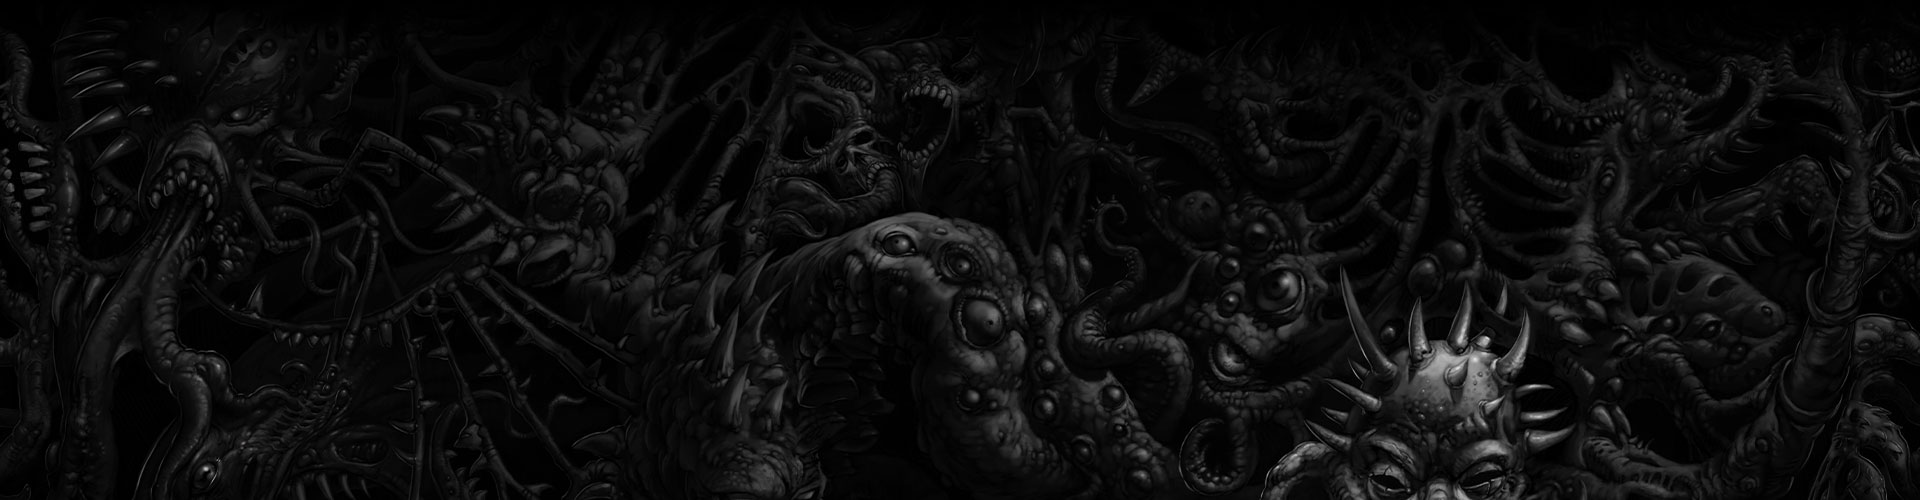 괴물의 여러 신체 부위로 이루어진 어두운 벽.